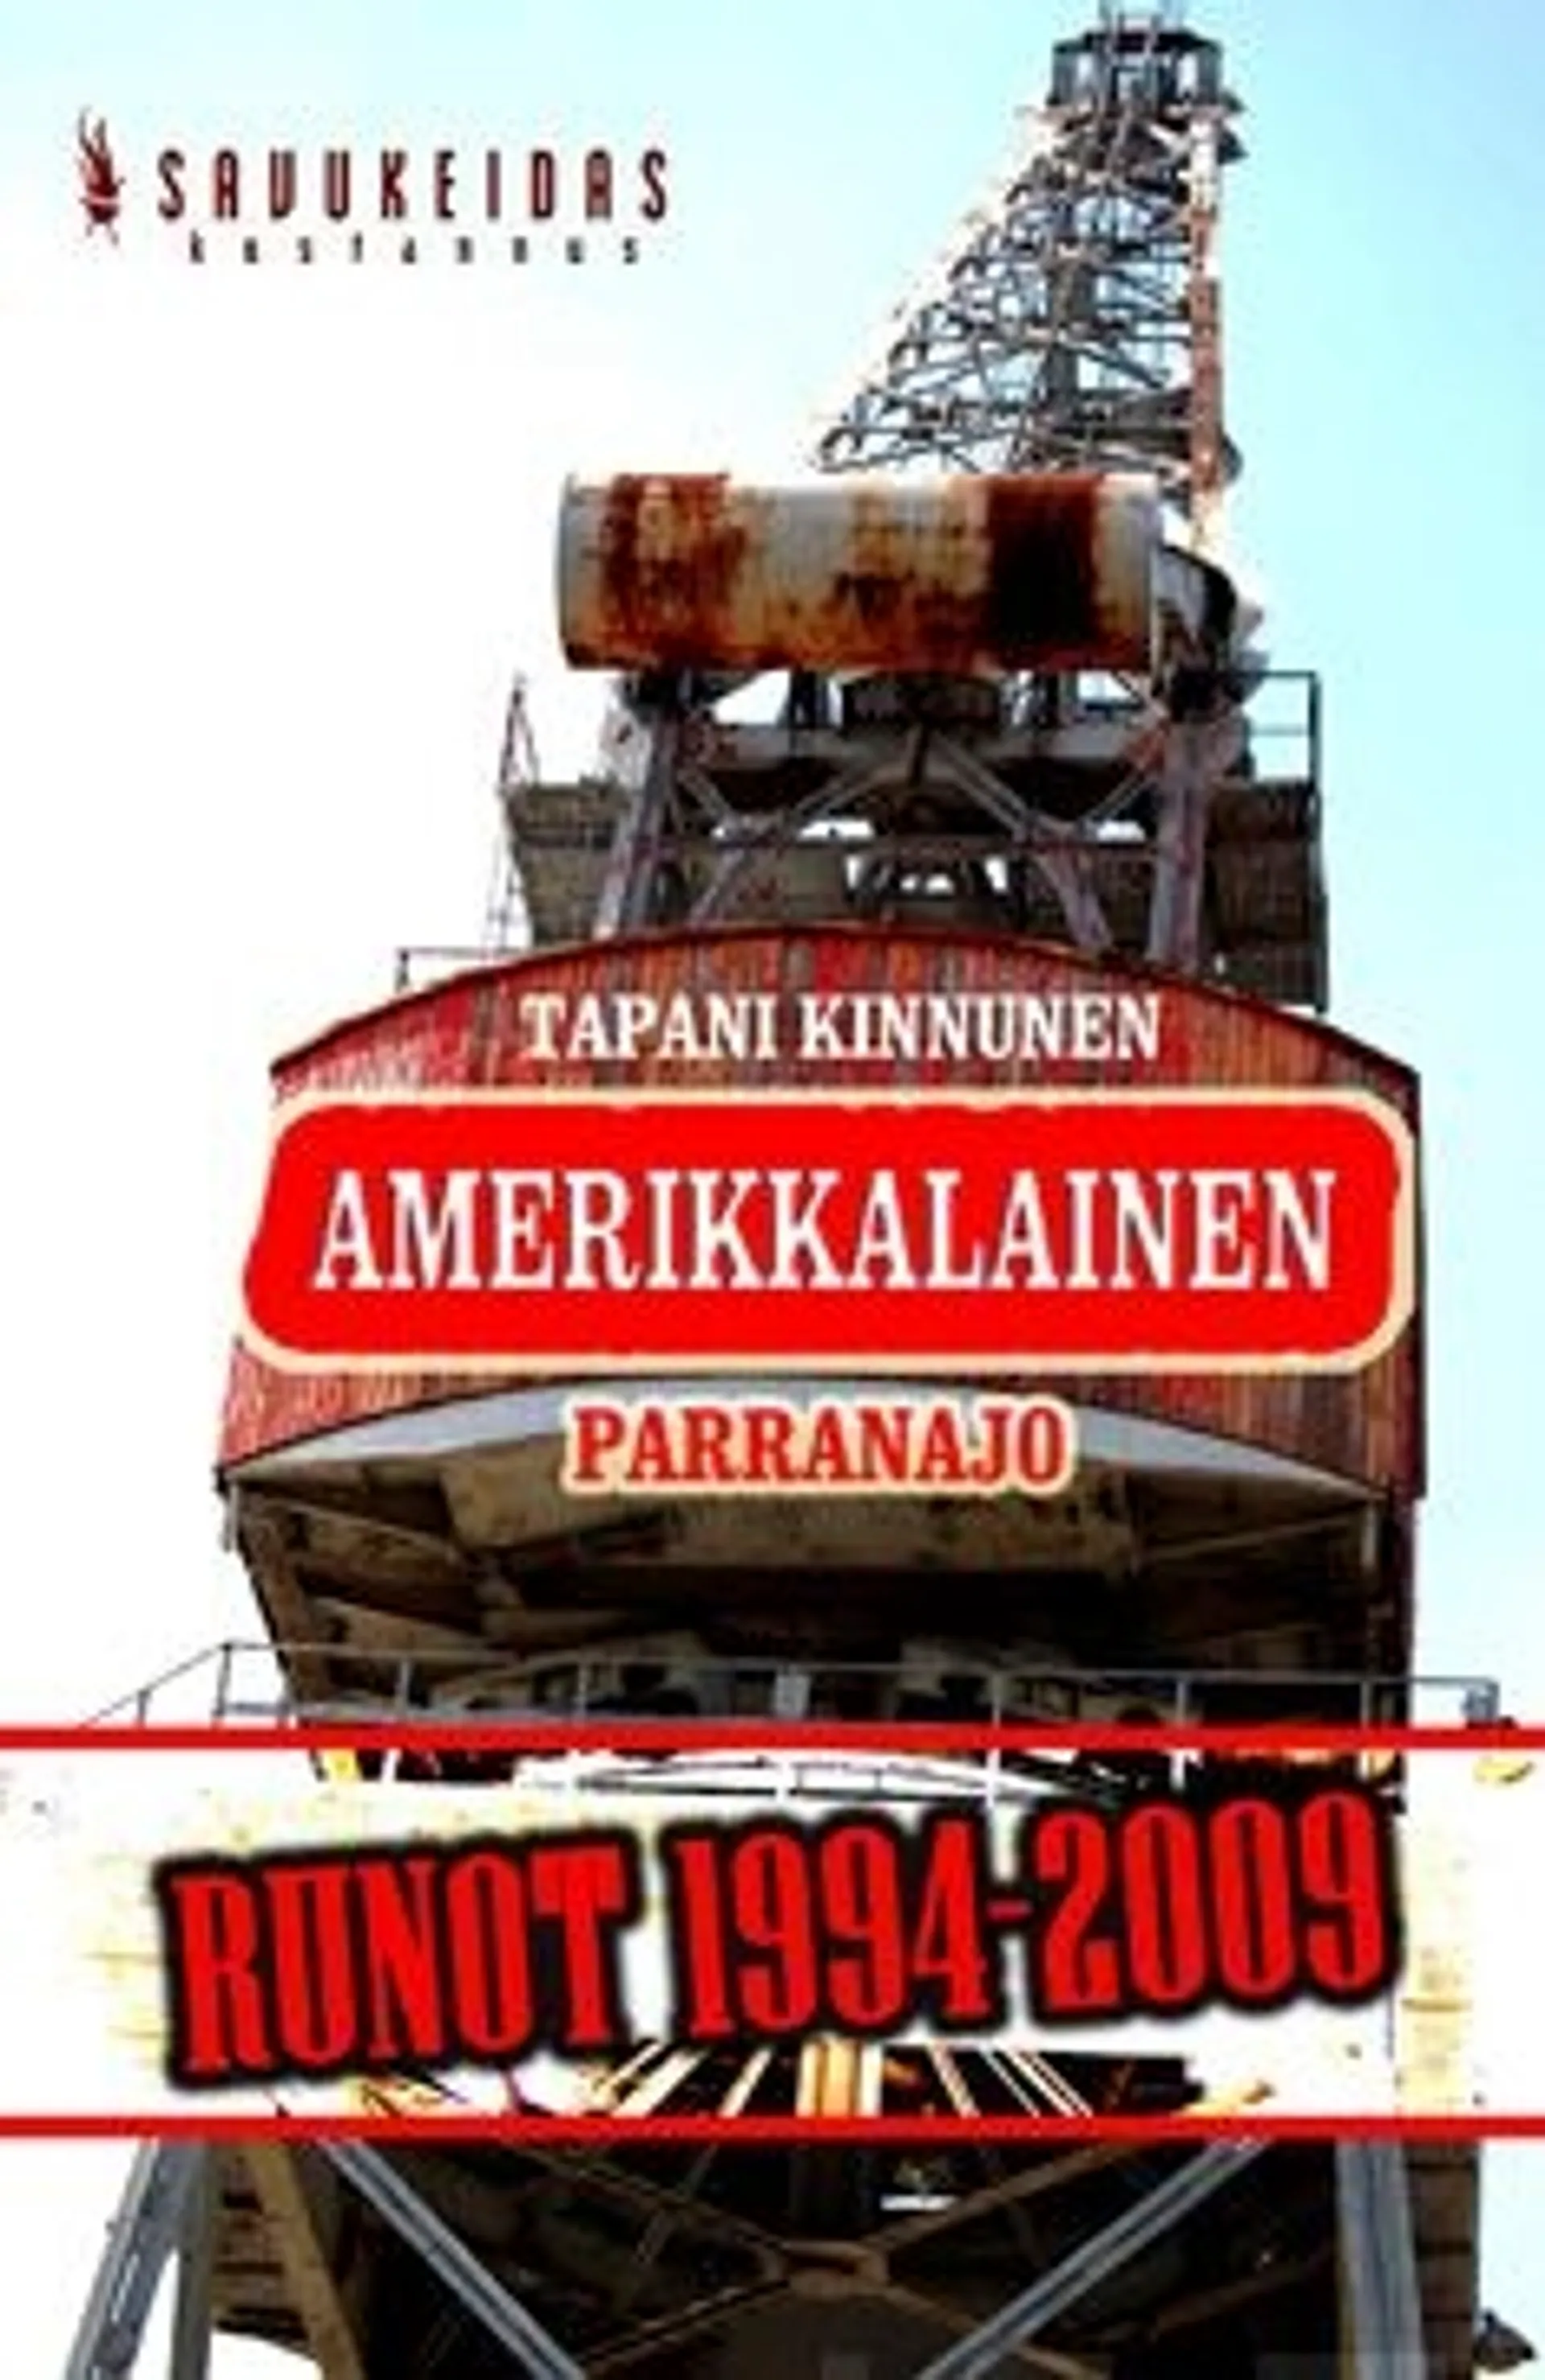 Kinnunen, Amerikkalainen parranajo - runot 1994-2009